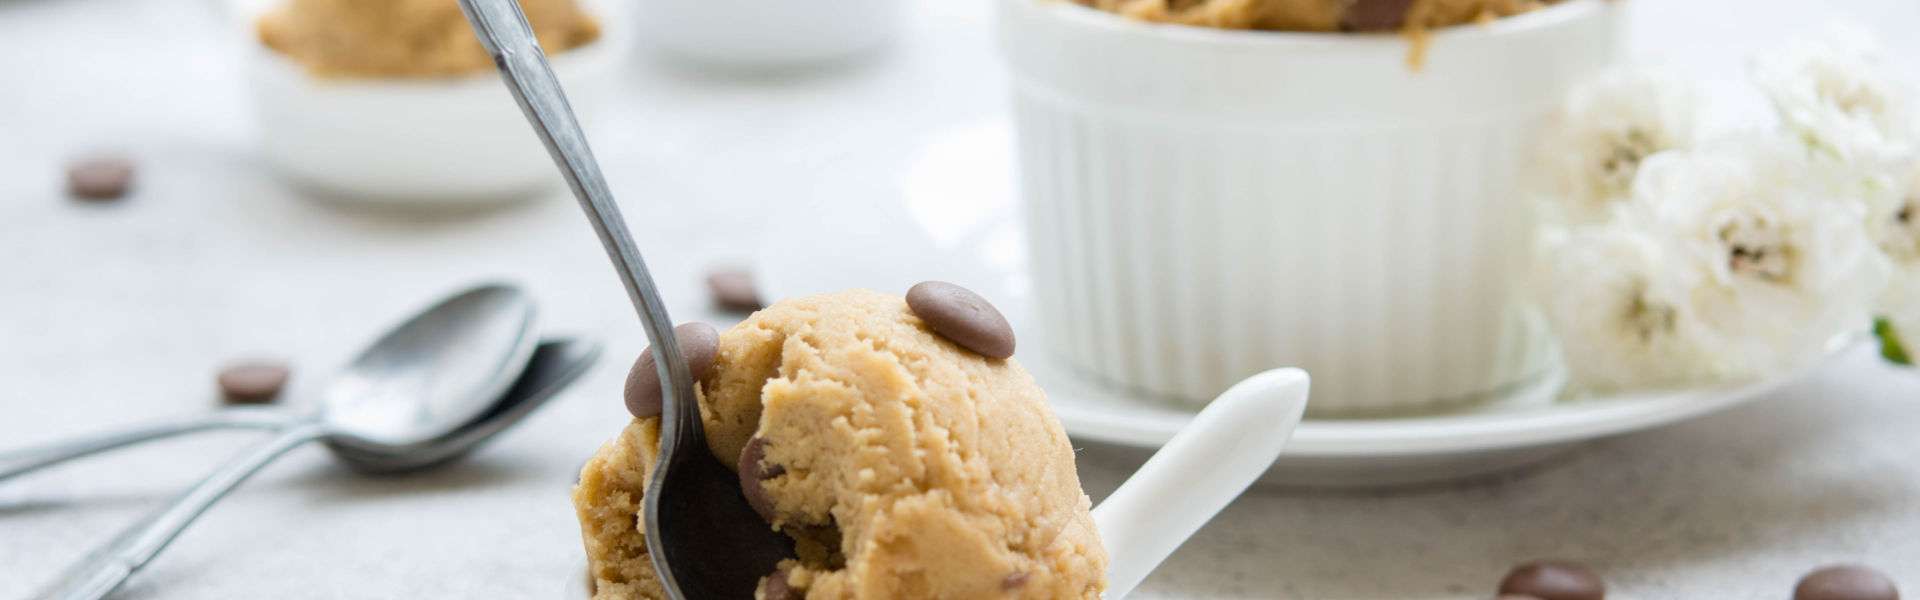 Cookie dough: l'impasto dei biscotti da mangiare crudo senza uova